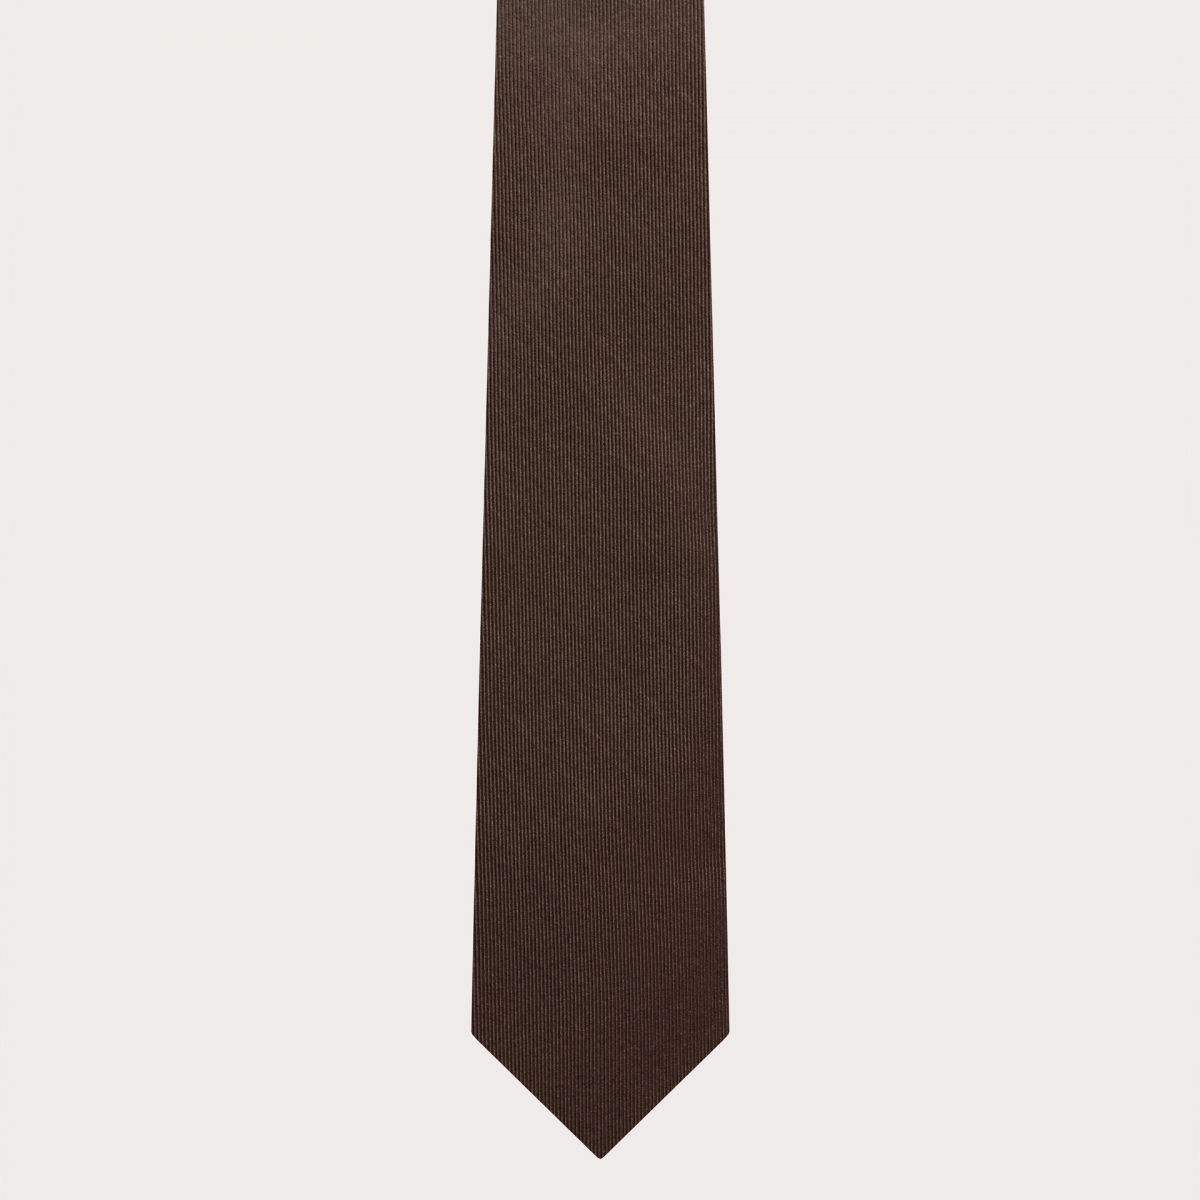 BRUCLE Elégant ensemble de fines bretelles avec boutonnières et cravate en soie marron